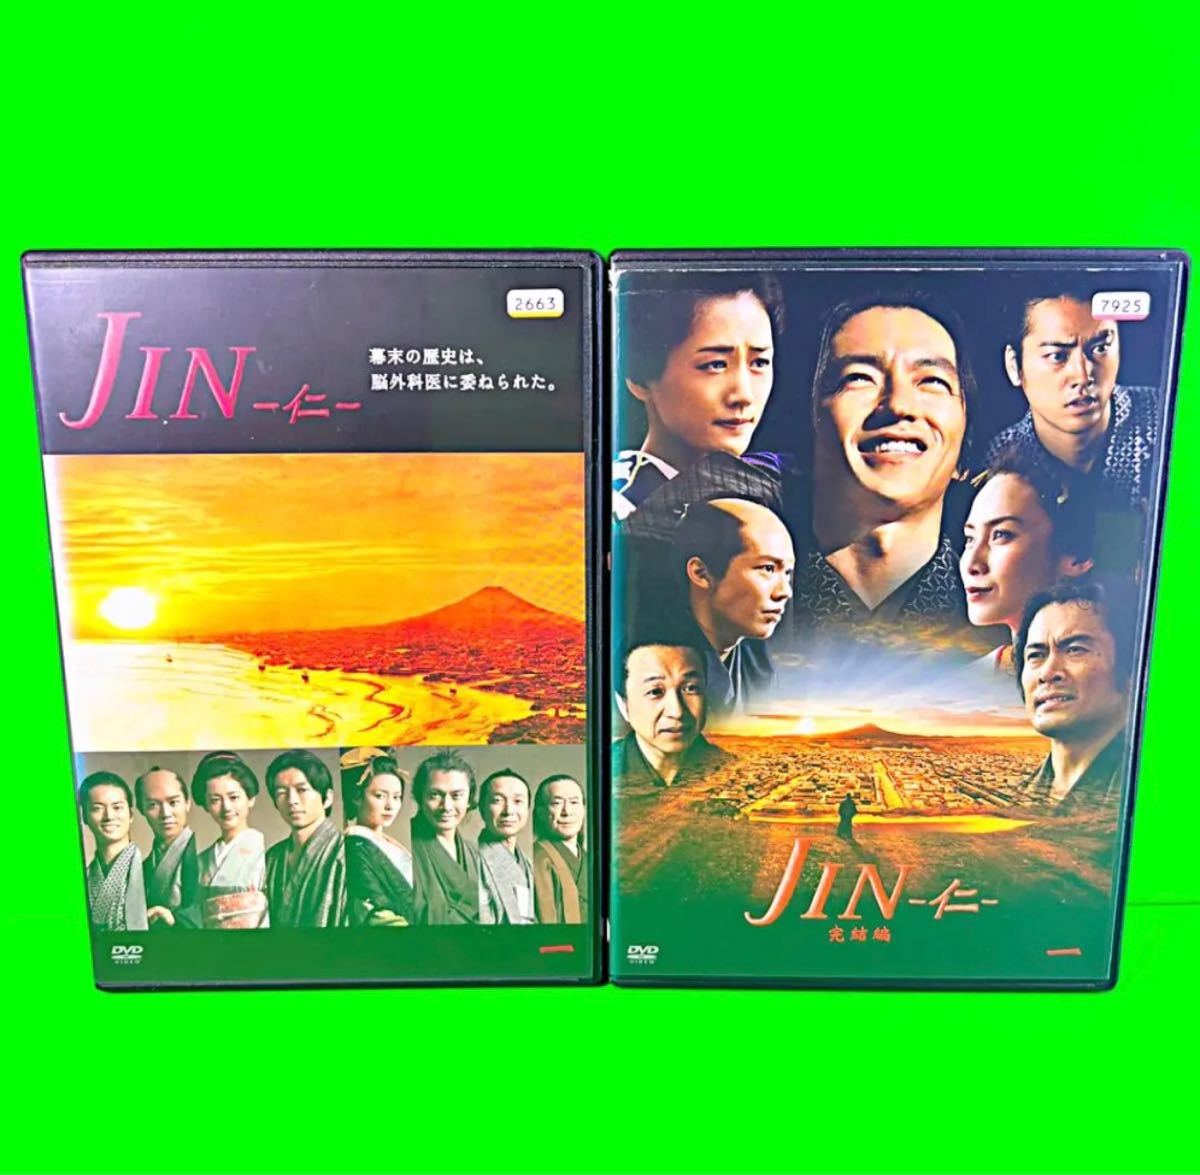 定番高評価 大沢たかお 綾瀬はるか JIN-仁- & 完結編DVD-BOXの通販 by